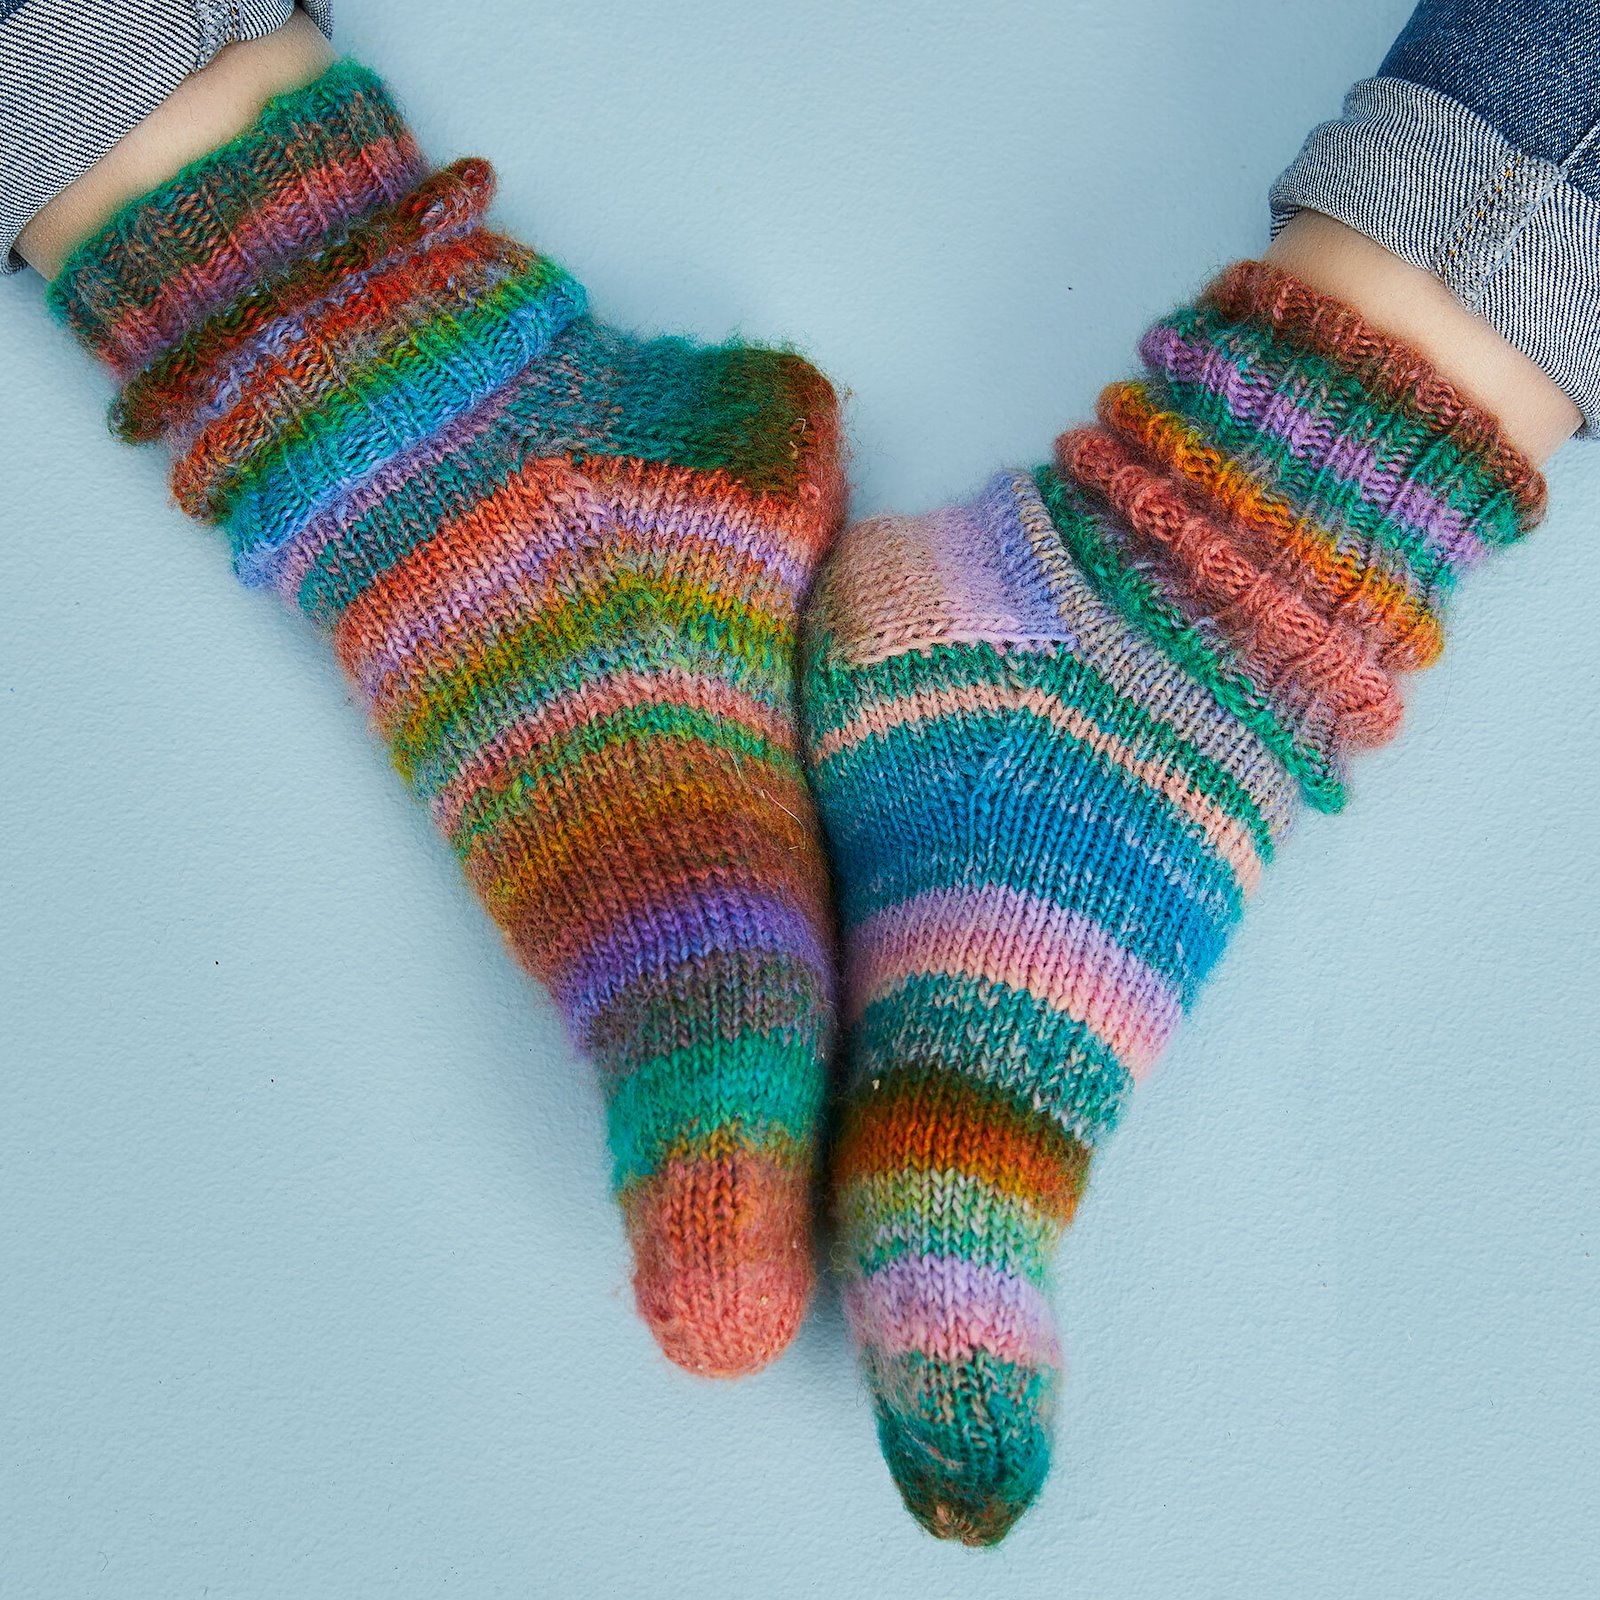 FRAYA knitting pattern - Lazy Sunday Socks, accessories 90000106_fraya3007_sskit